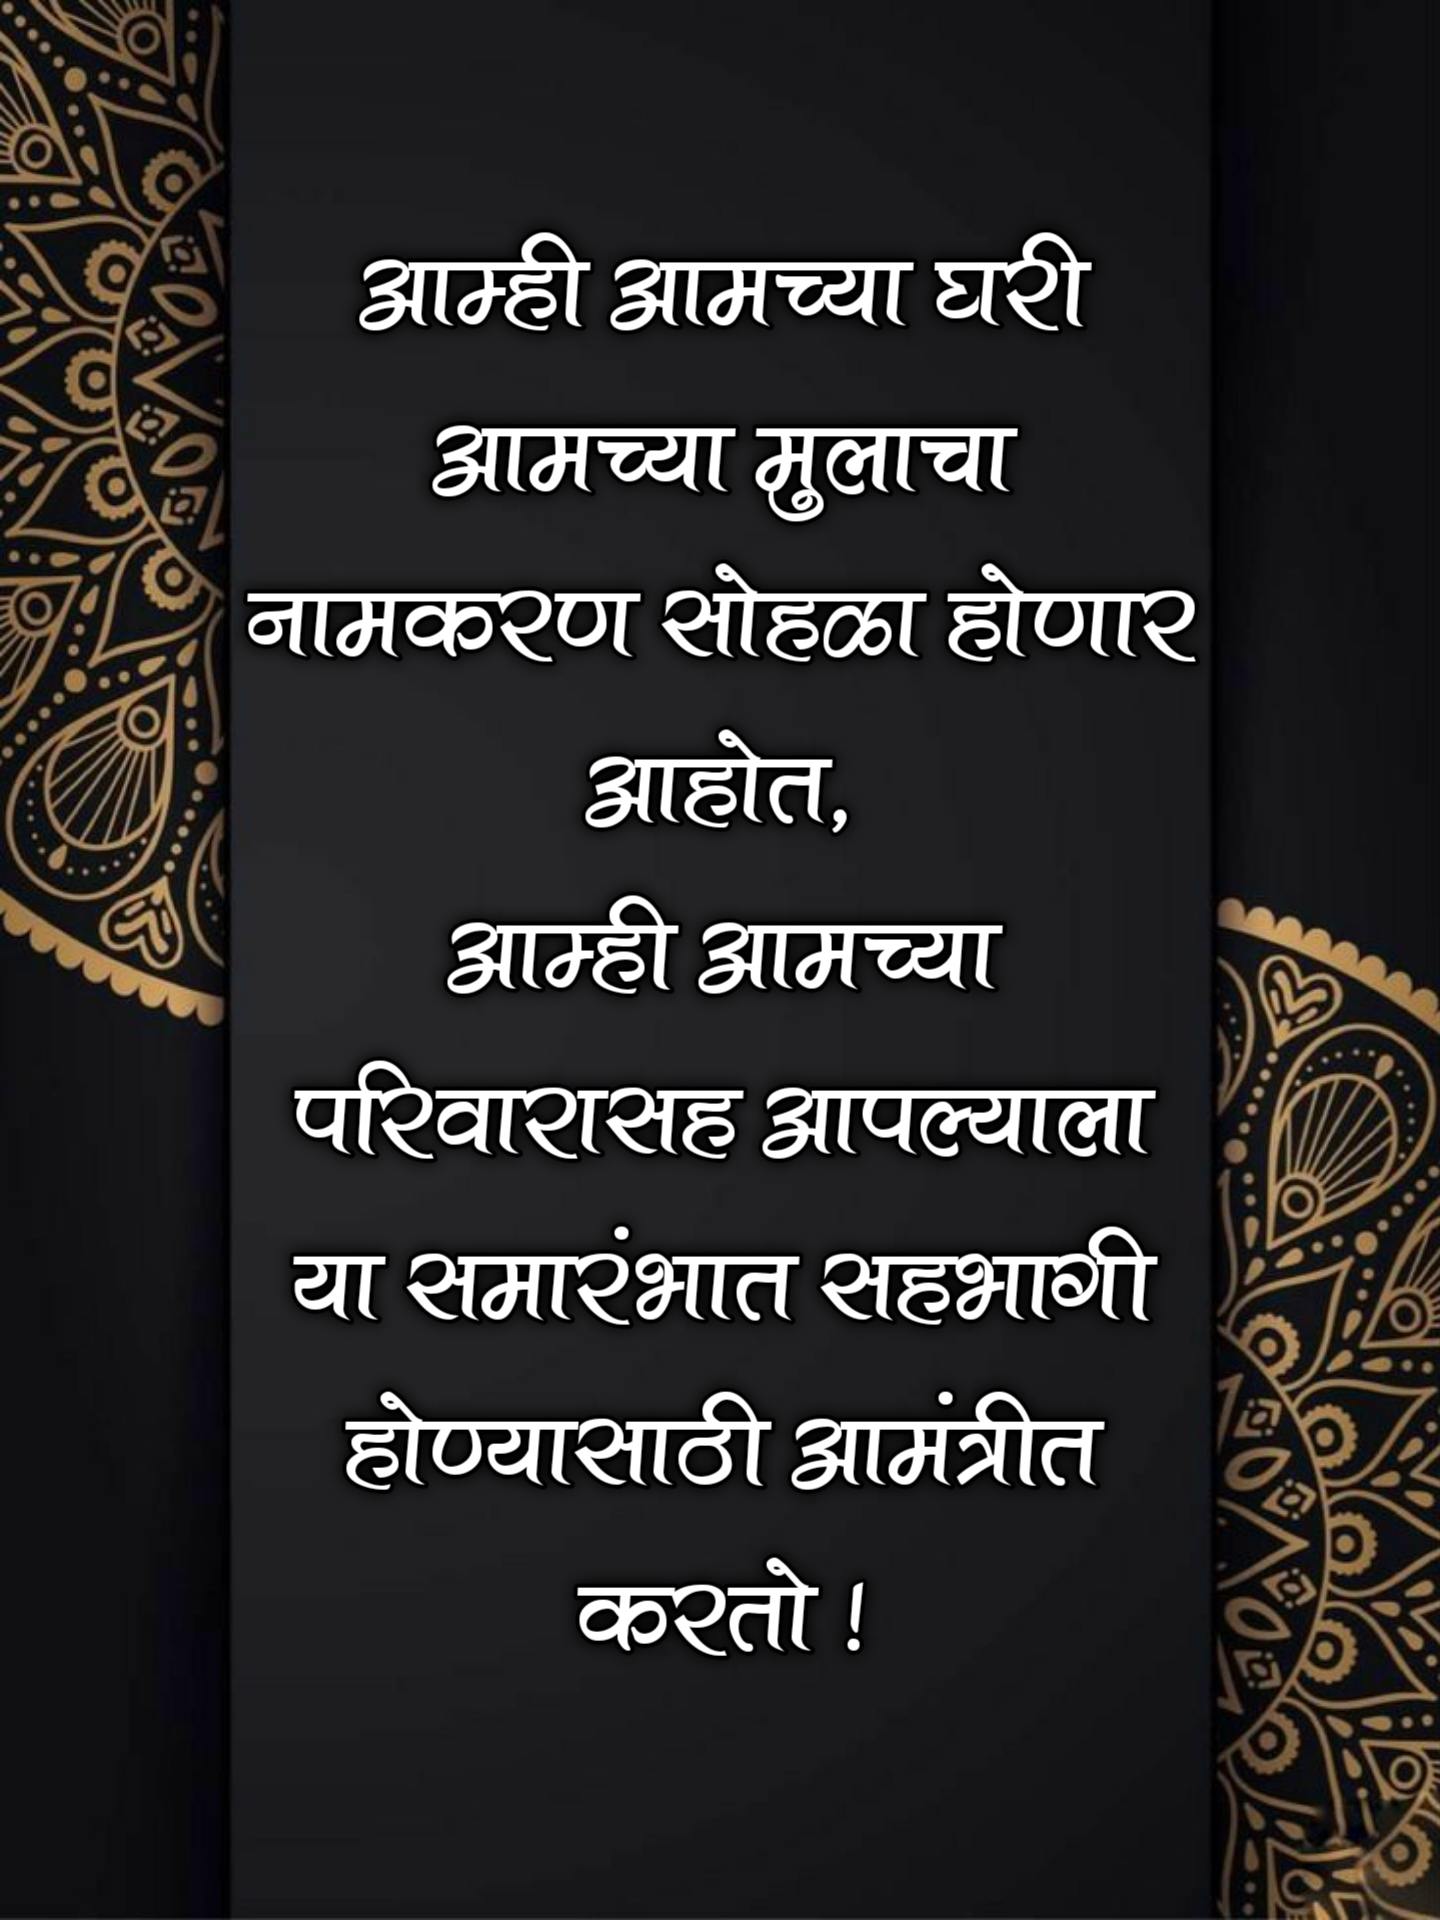 Namkaran Sohala Invitation Card Marathi 3 -